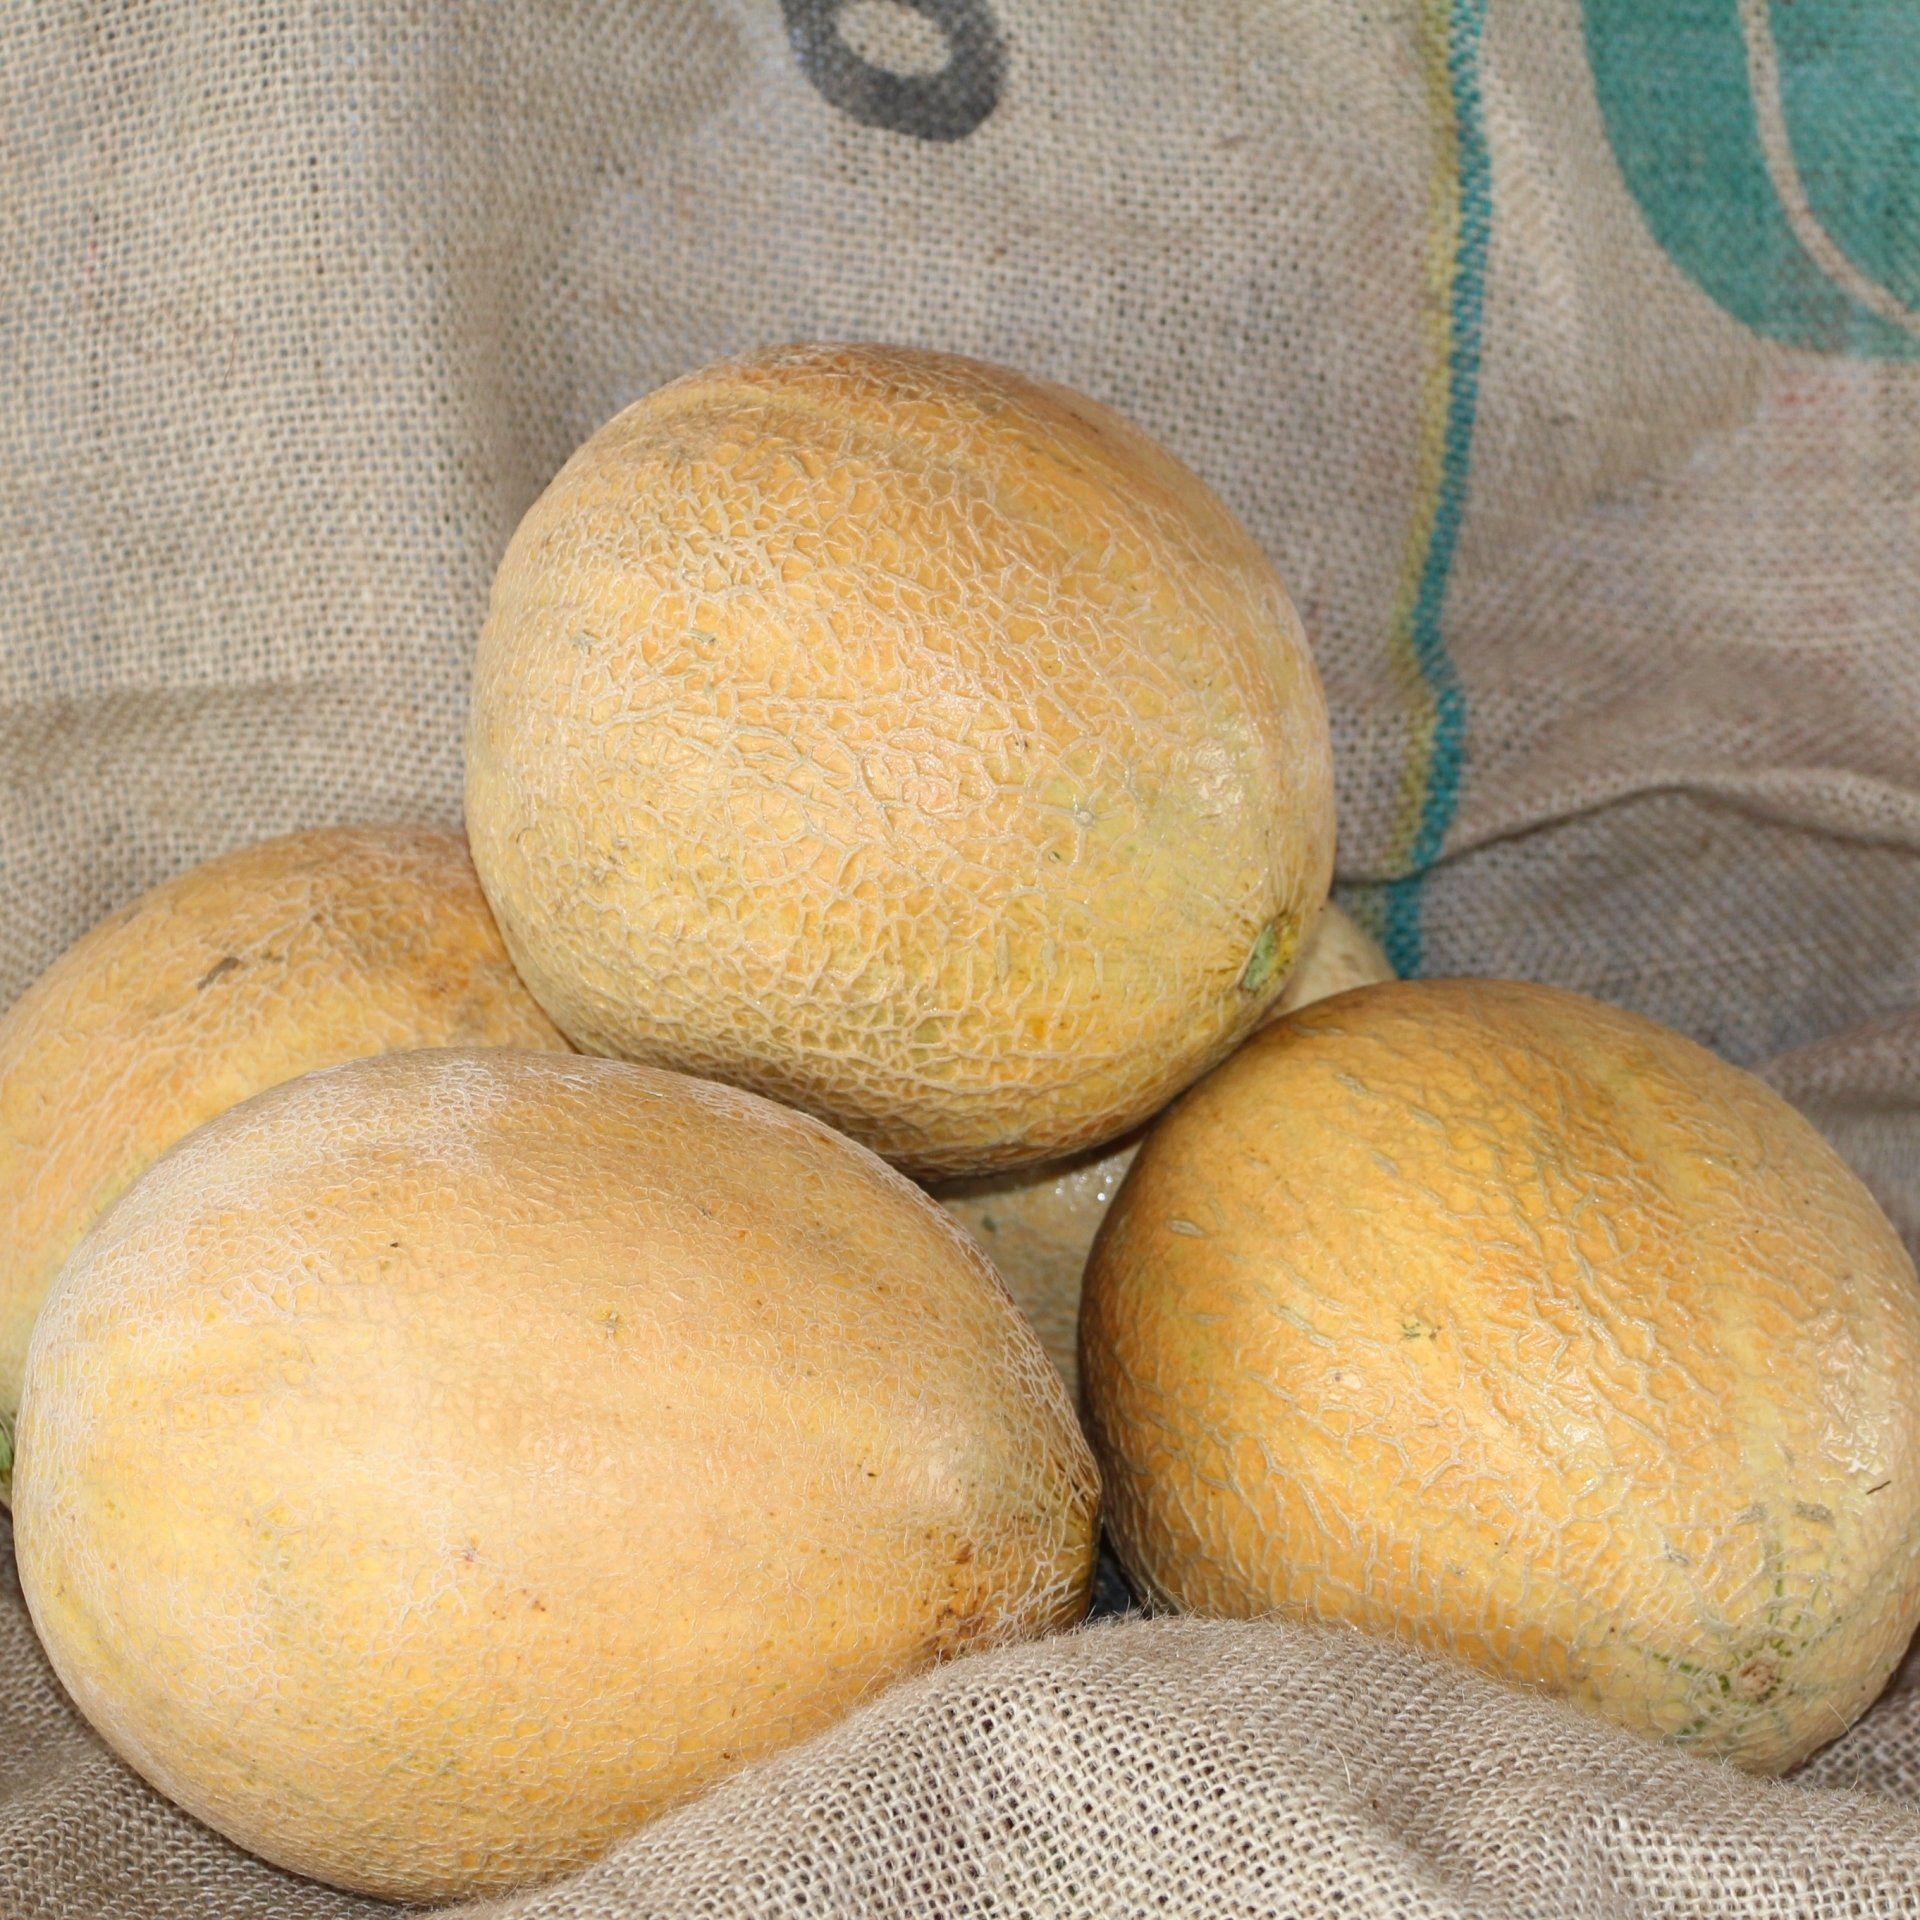 locally grown cantaloupes